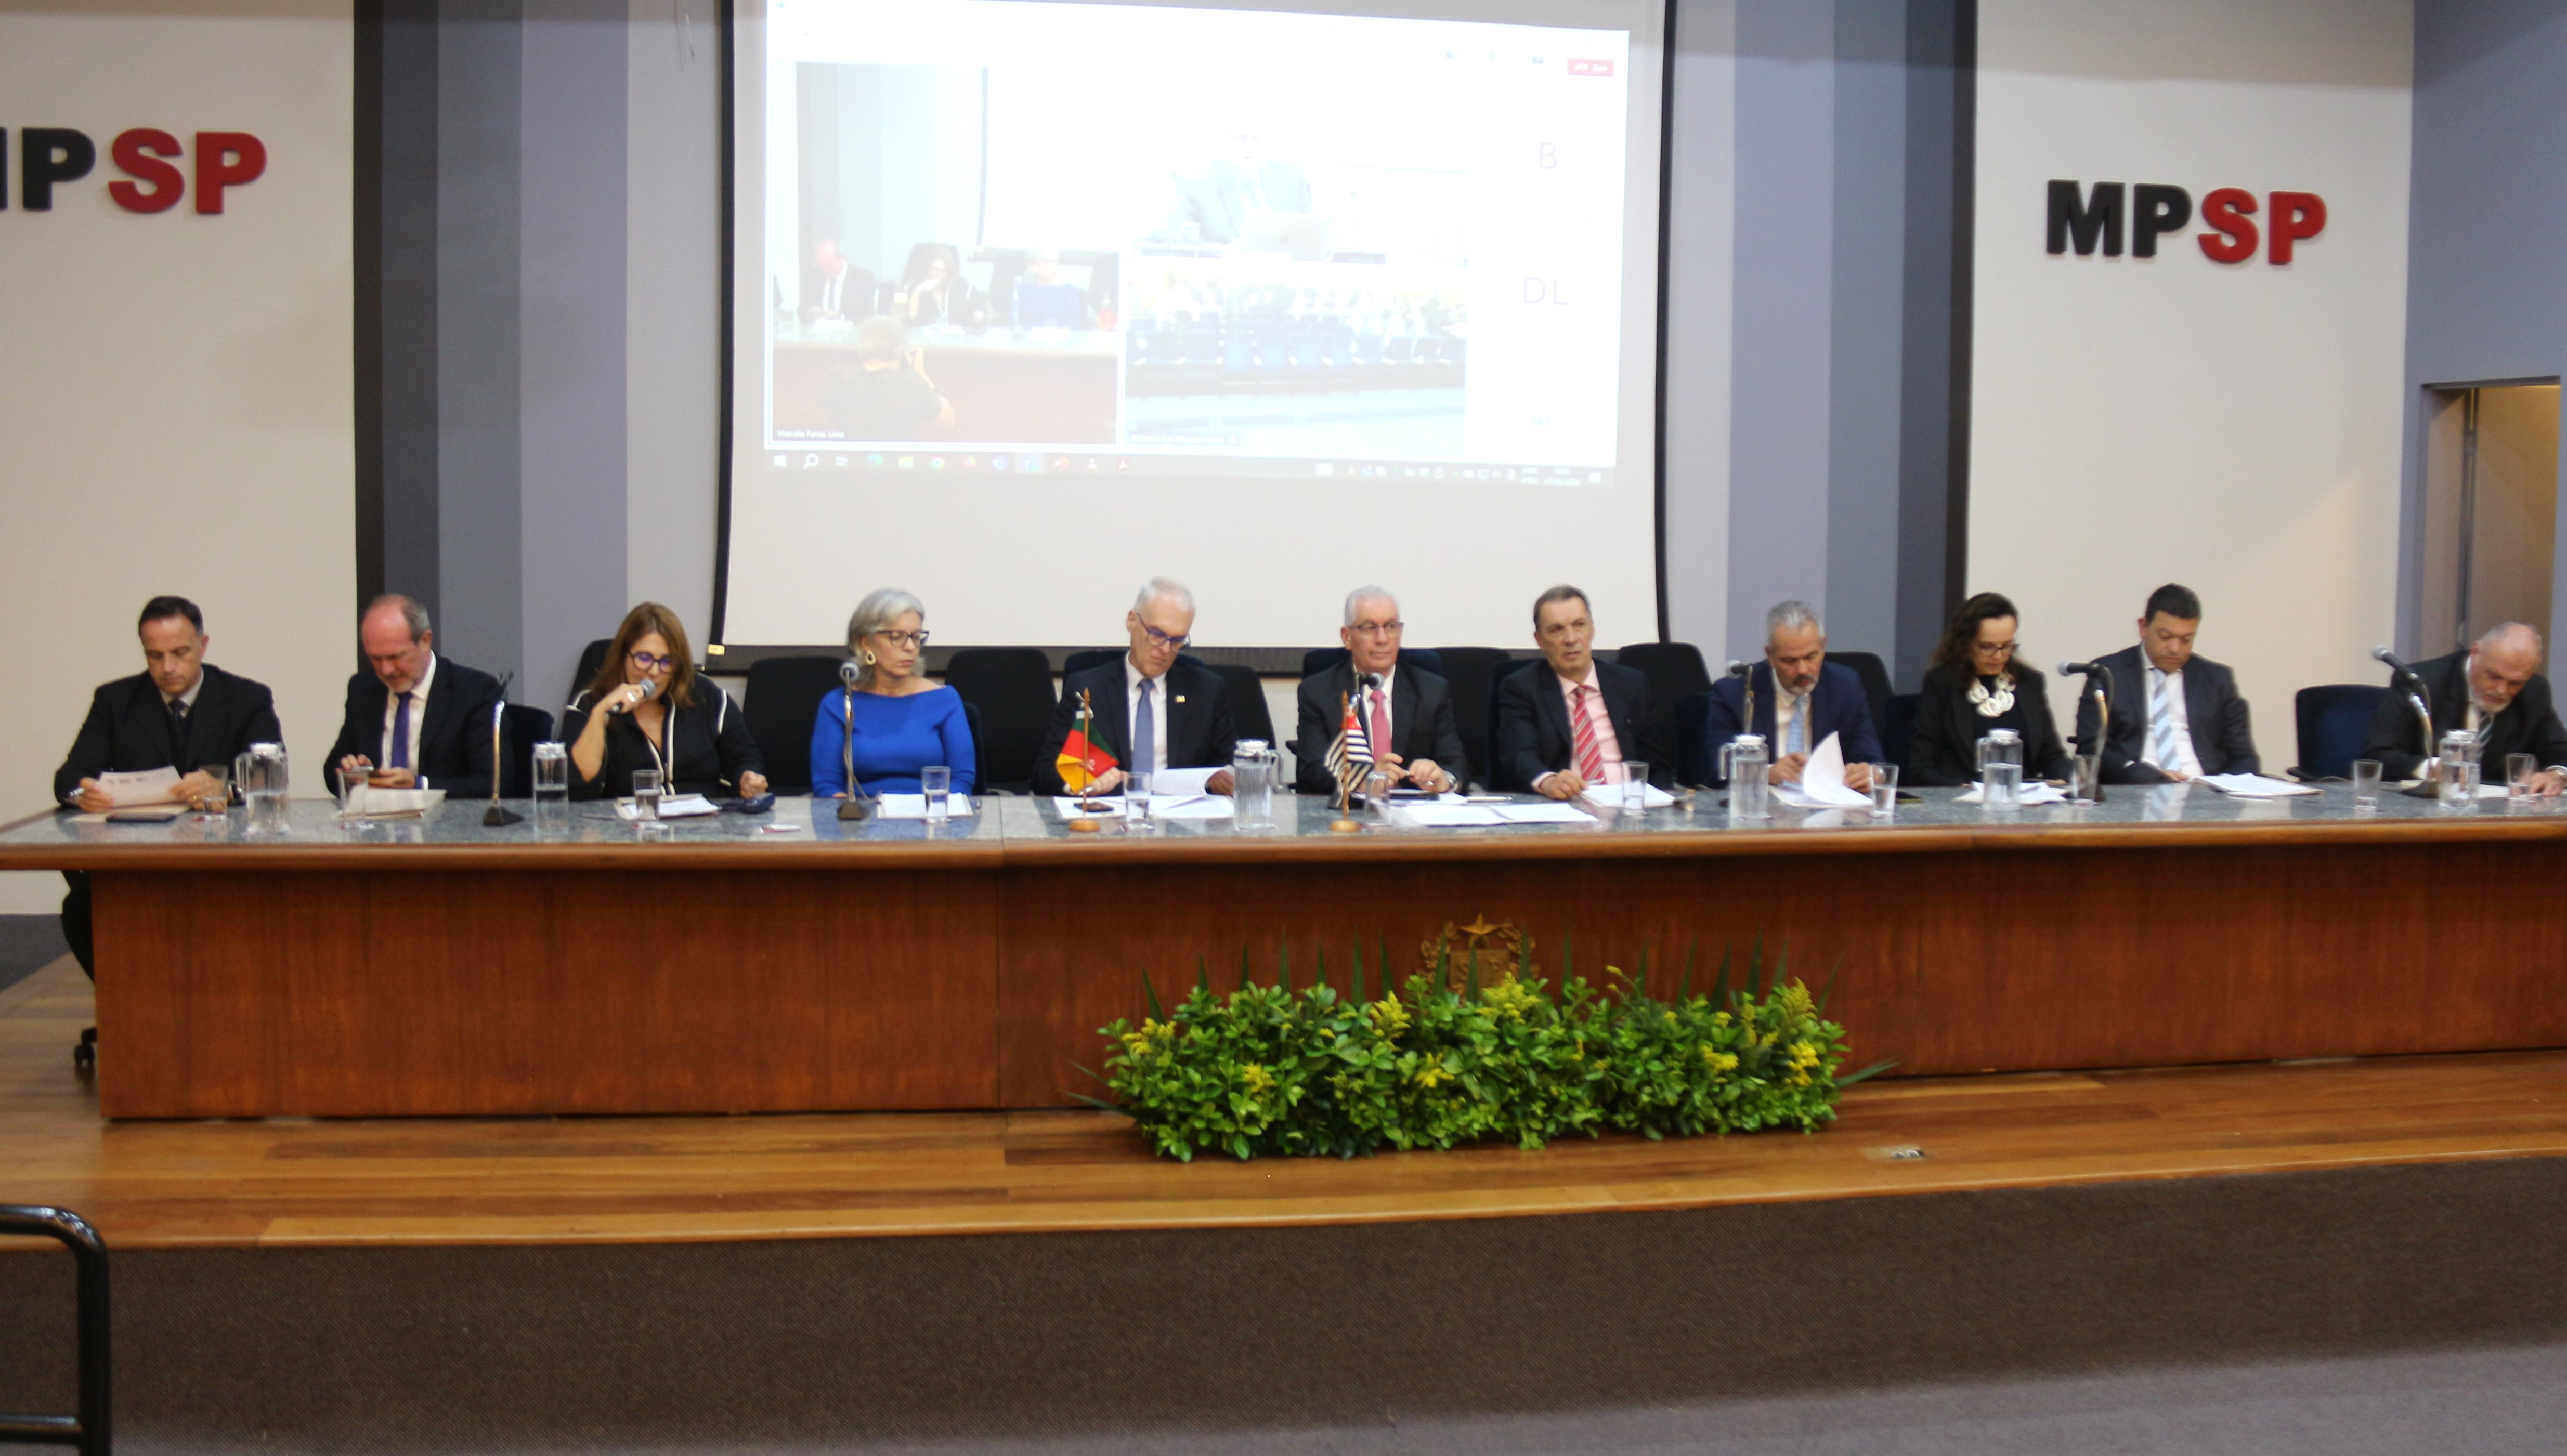 Foto dos participantes da reunião sentados à mesa durante a abertura